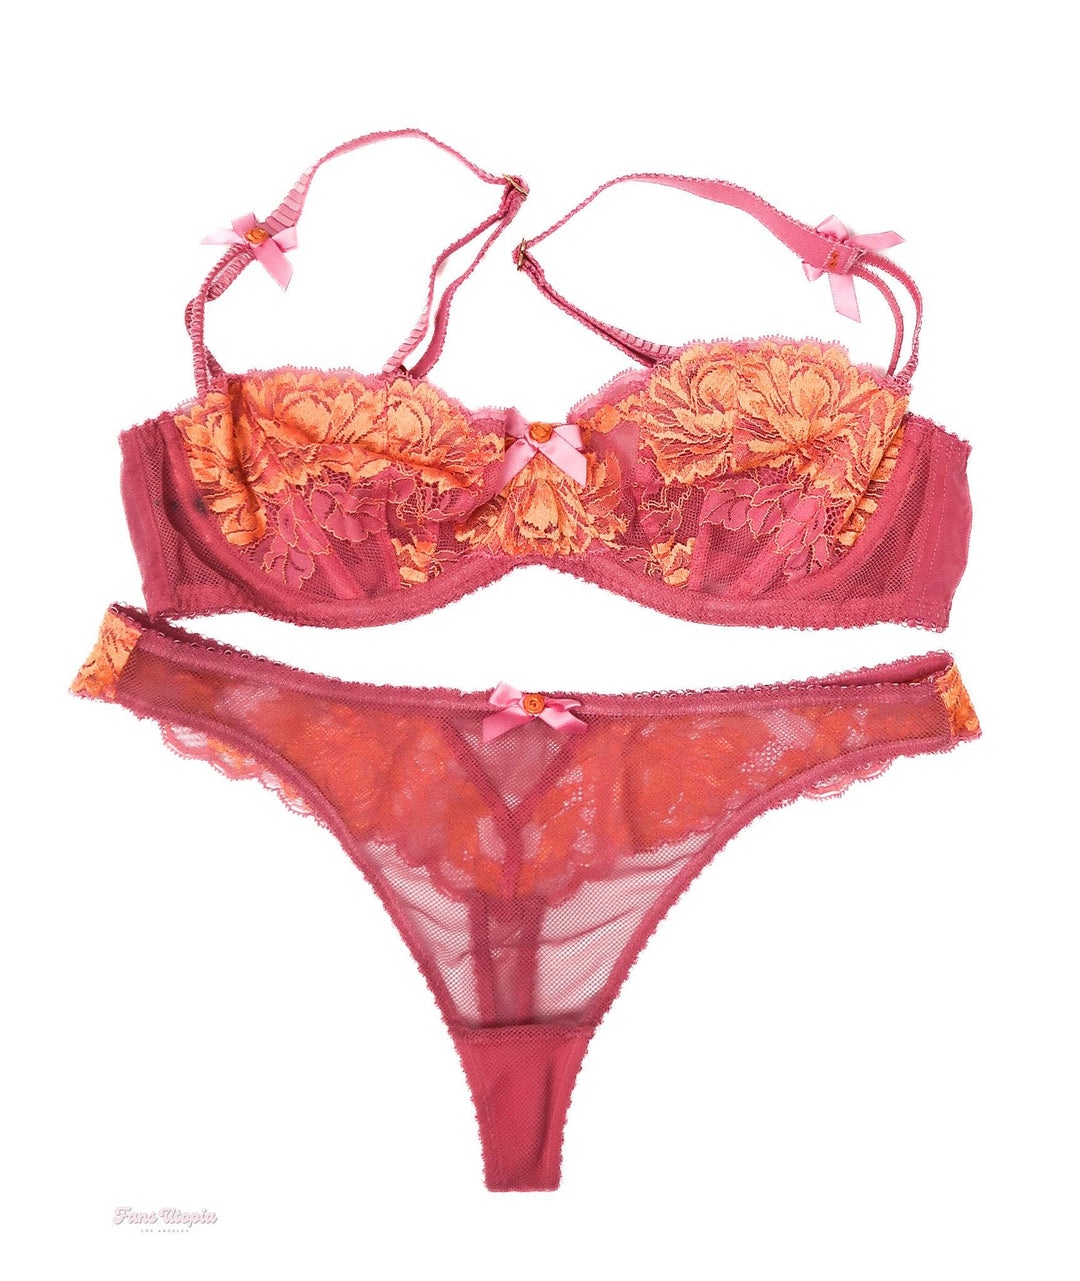 Leah Gotti AP Pink Orange Lace Bra & Panty Set - FANS UTOPIA